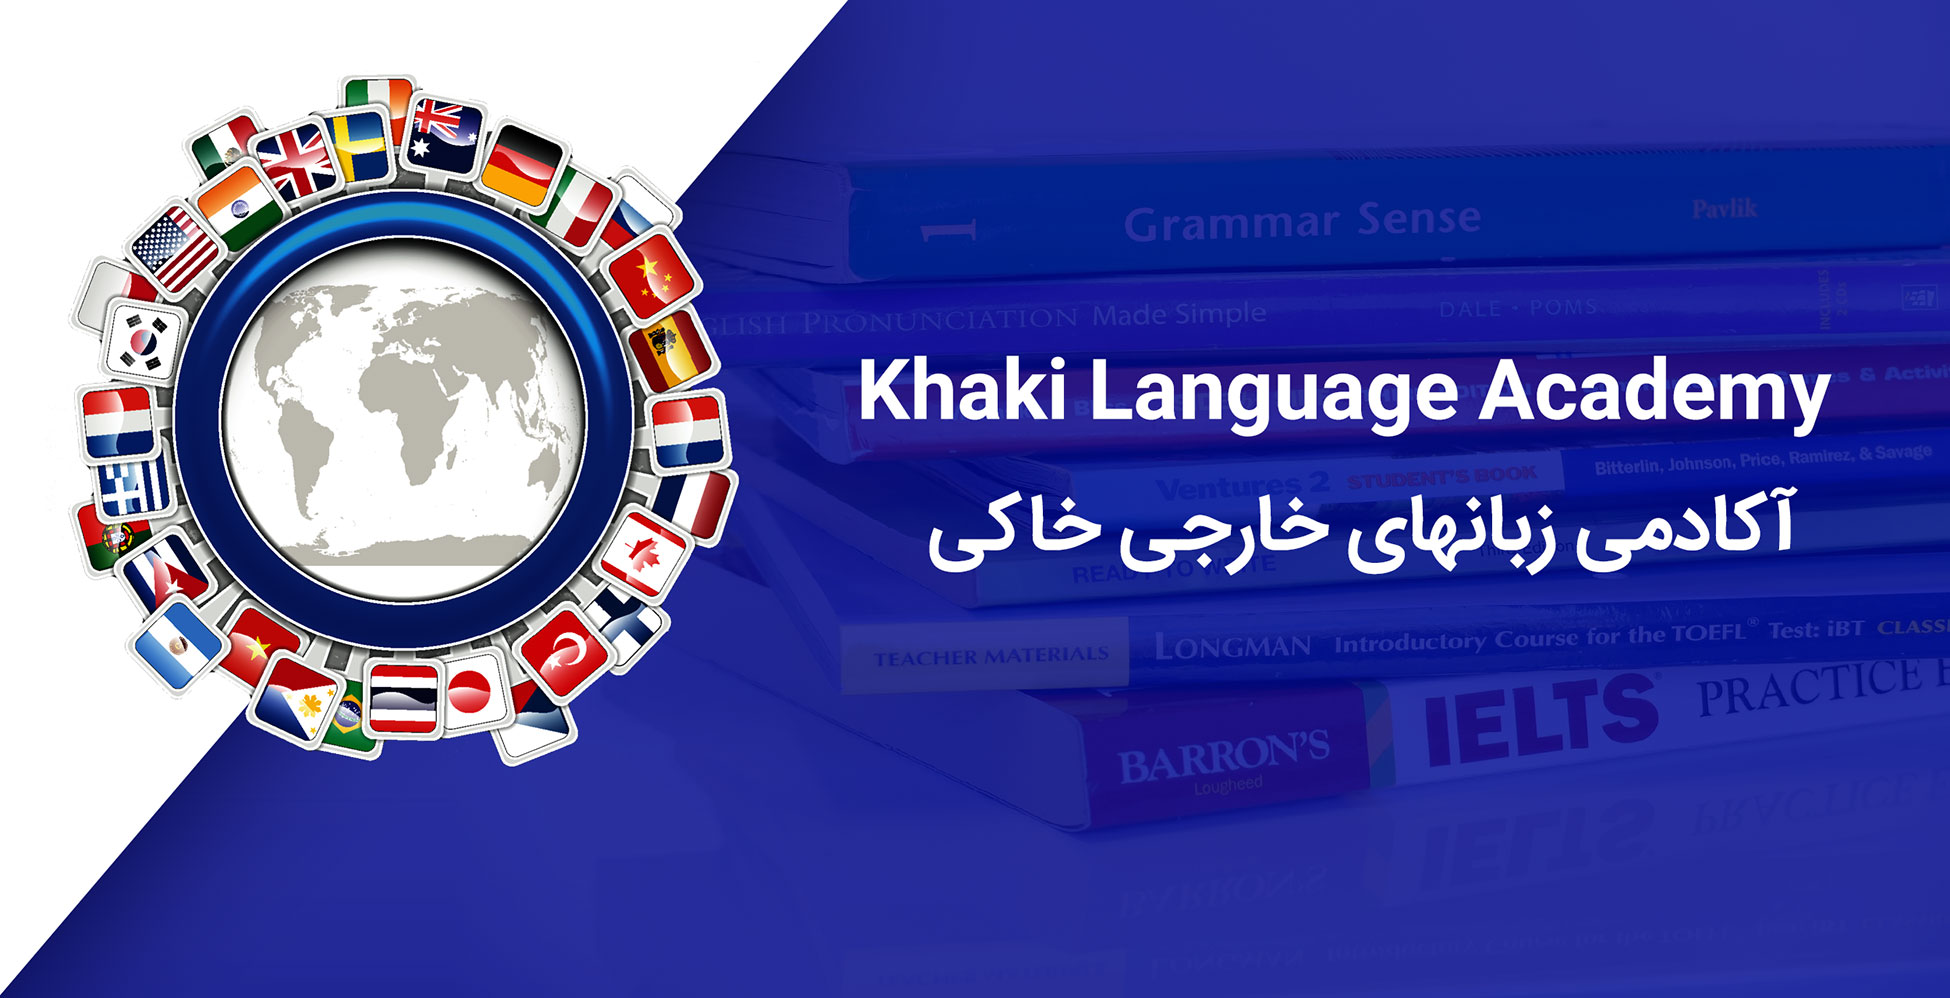 Khaki Language Academy